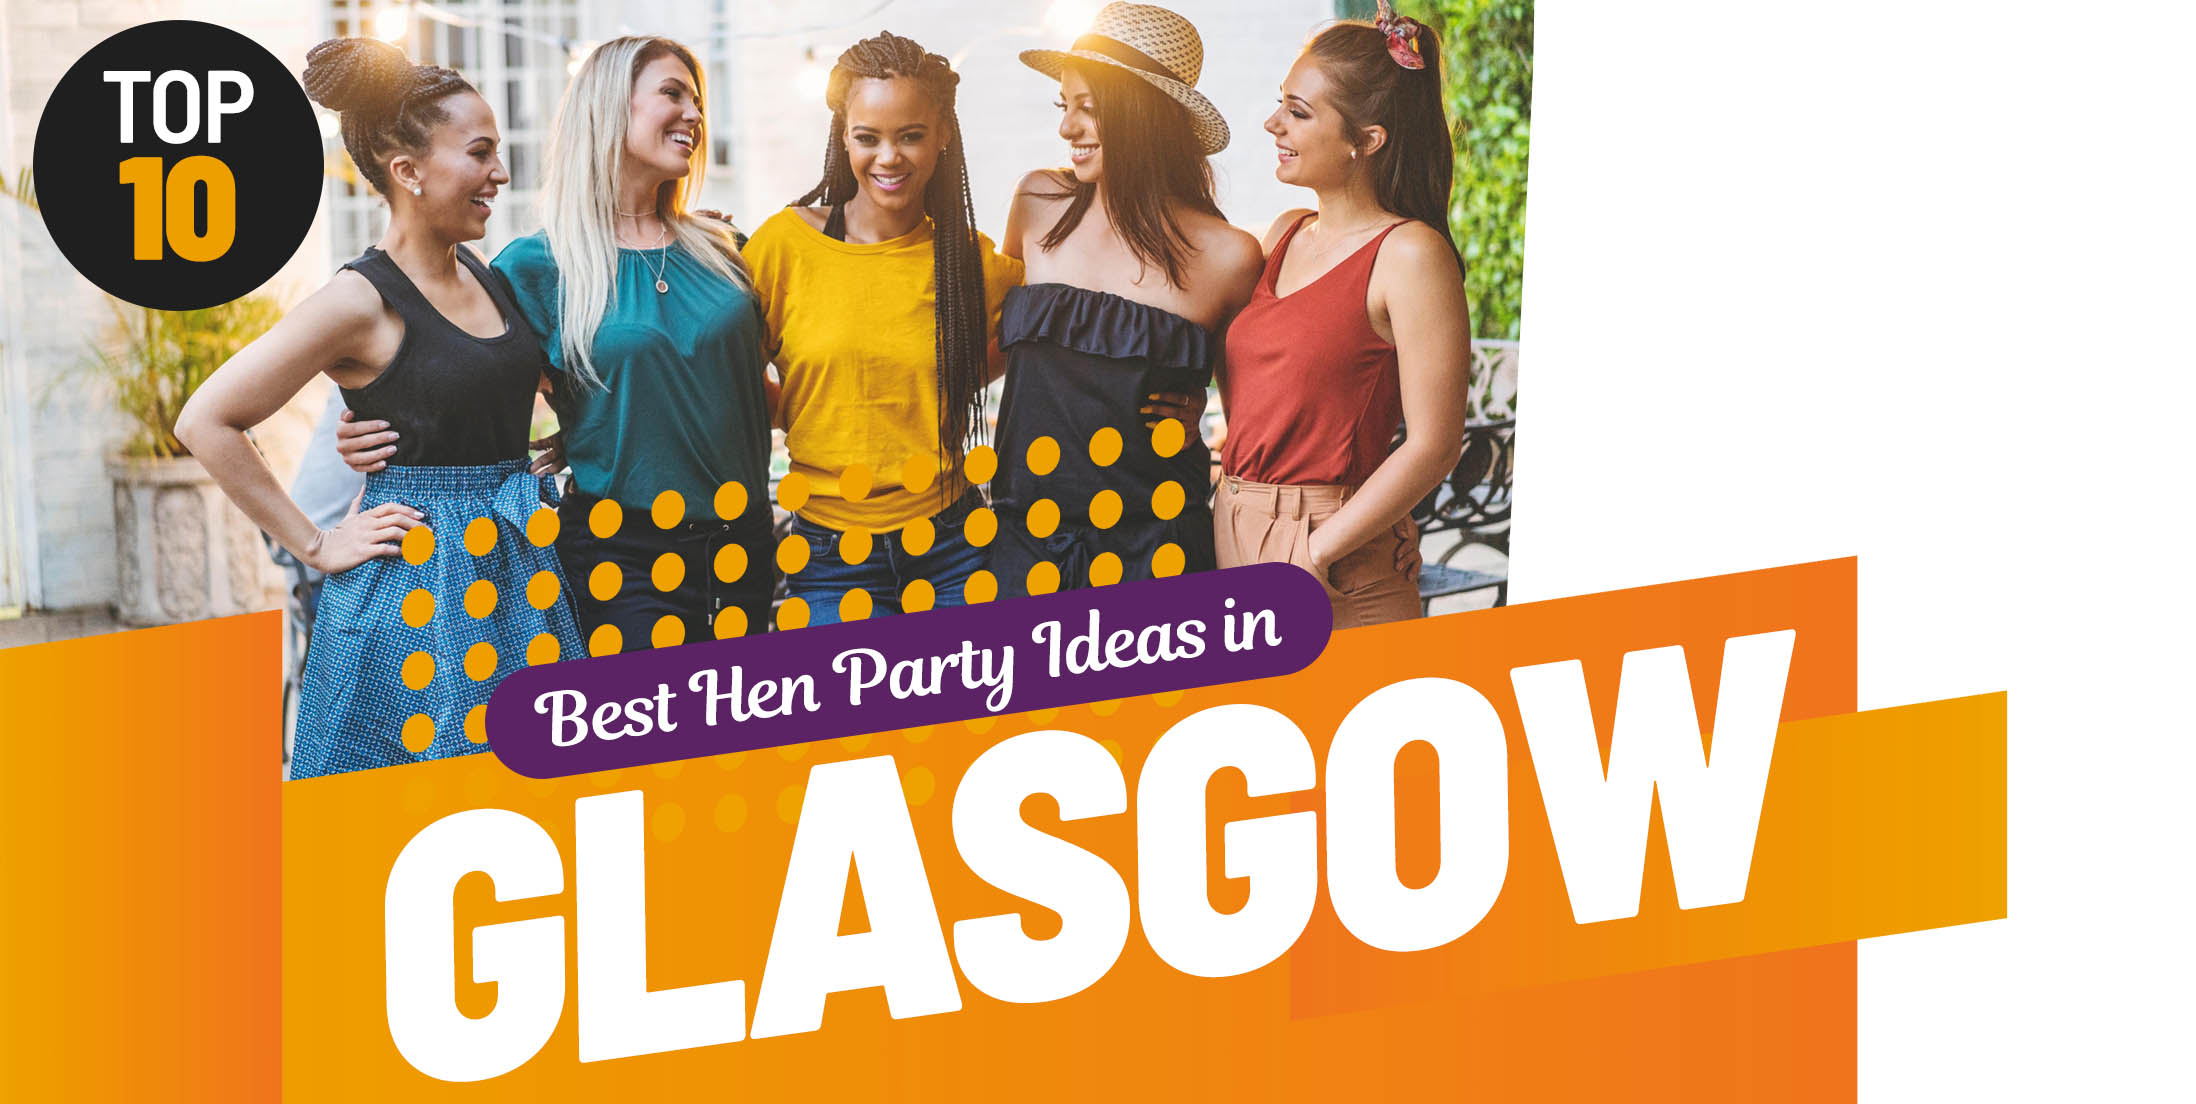 Top 10 Hen Party Activities & Ideas in Glasgow by Dance Hen Parties